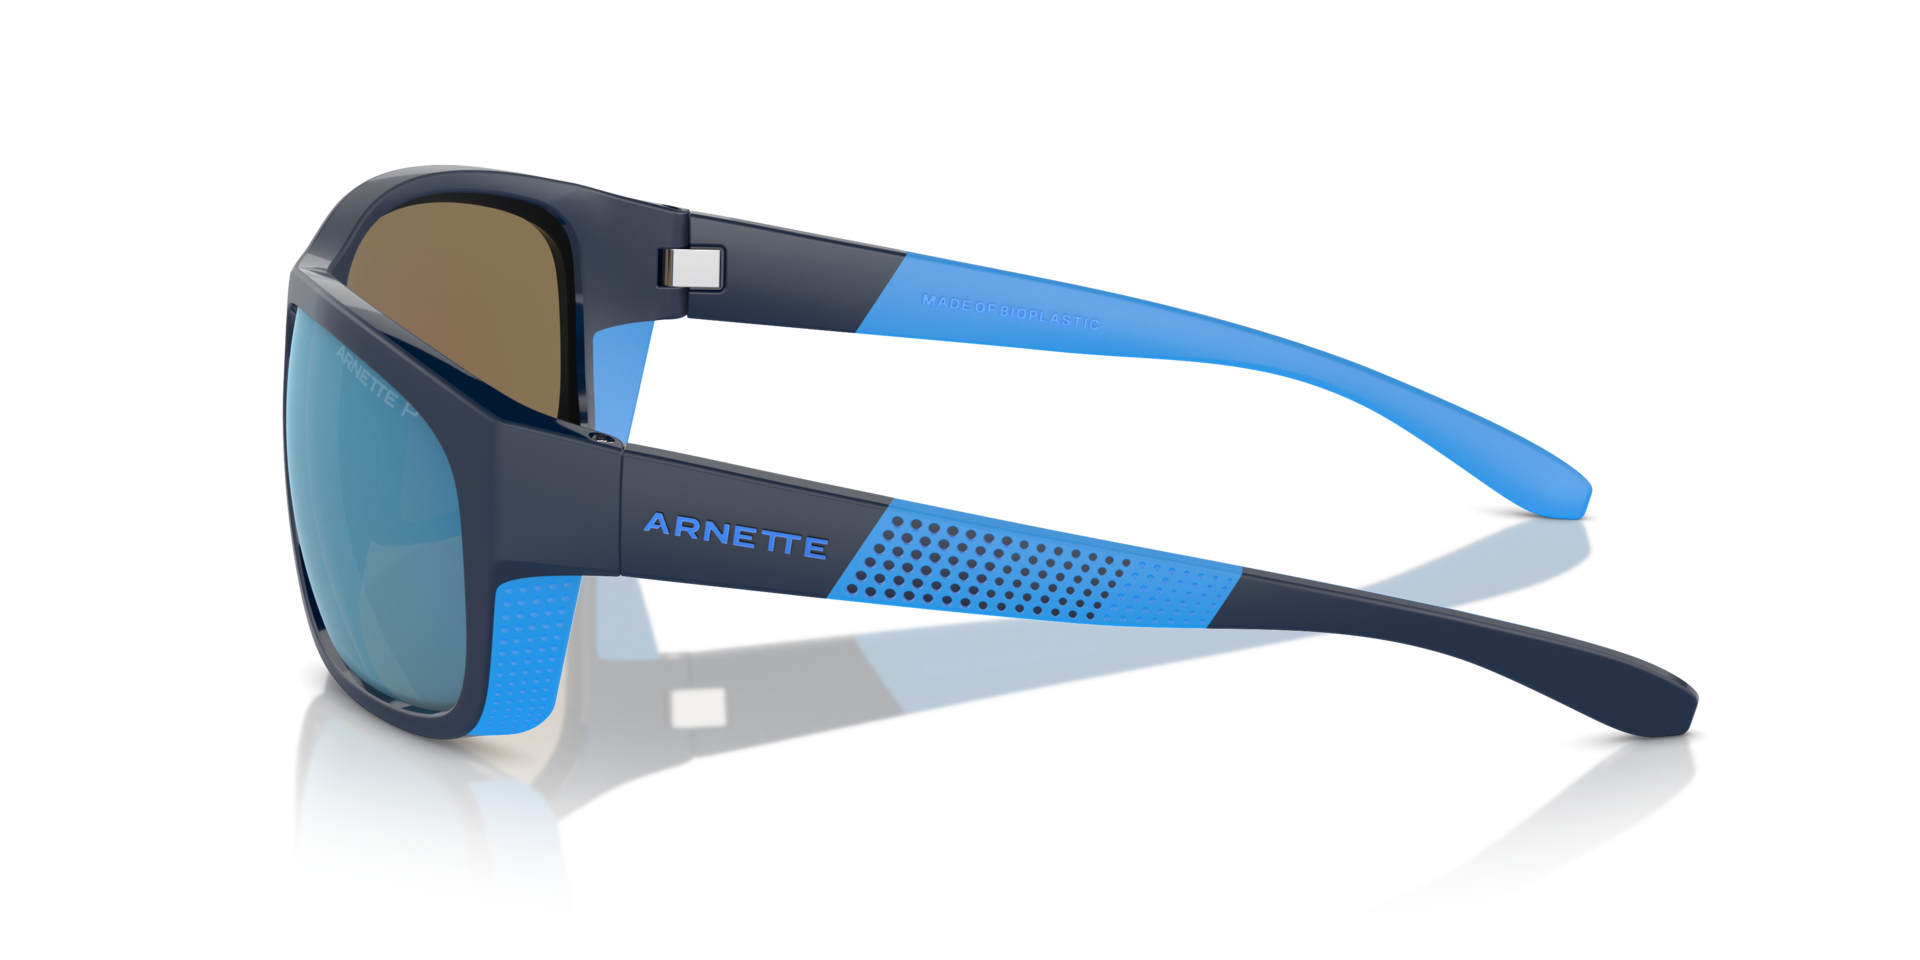 Das Bild zeigt die Sonnenbrille AN4337 275422 von der Marke Arnette in schwarz/blau.